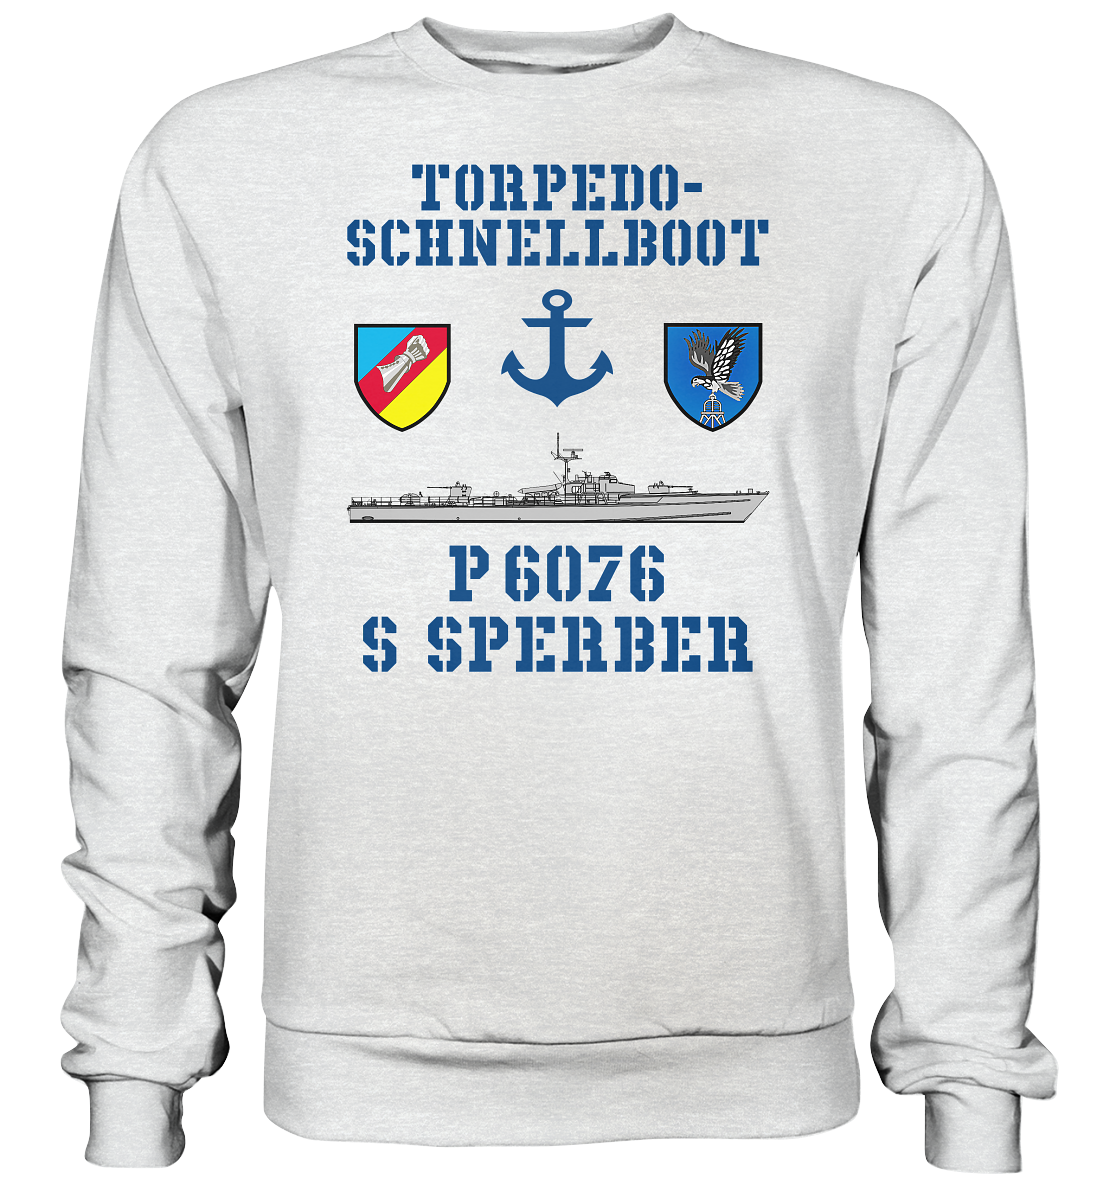 Torpedo-Schnellboot P6076 SPERBER Anker - Premium Sweatshirt